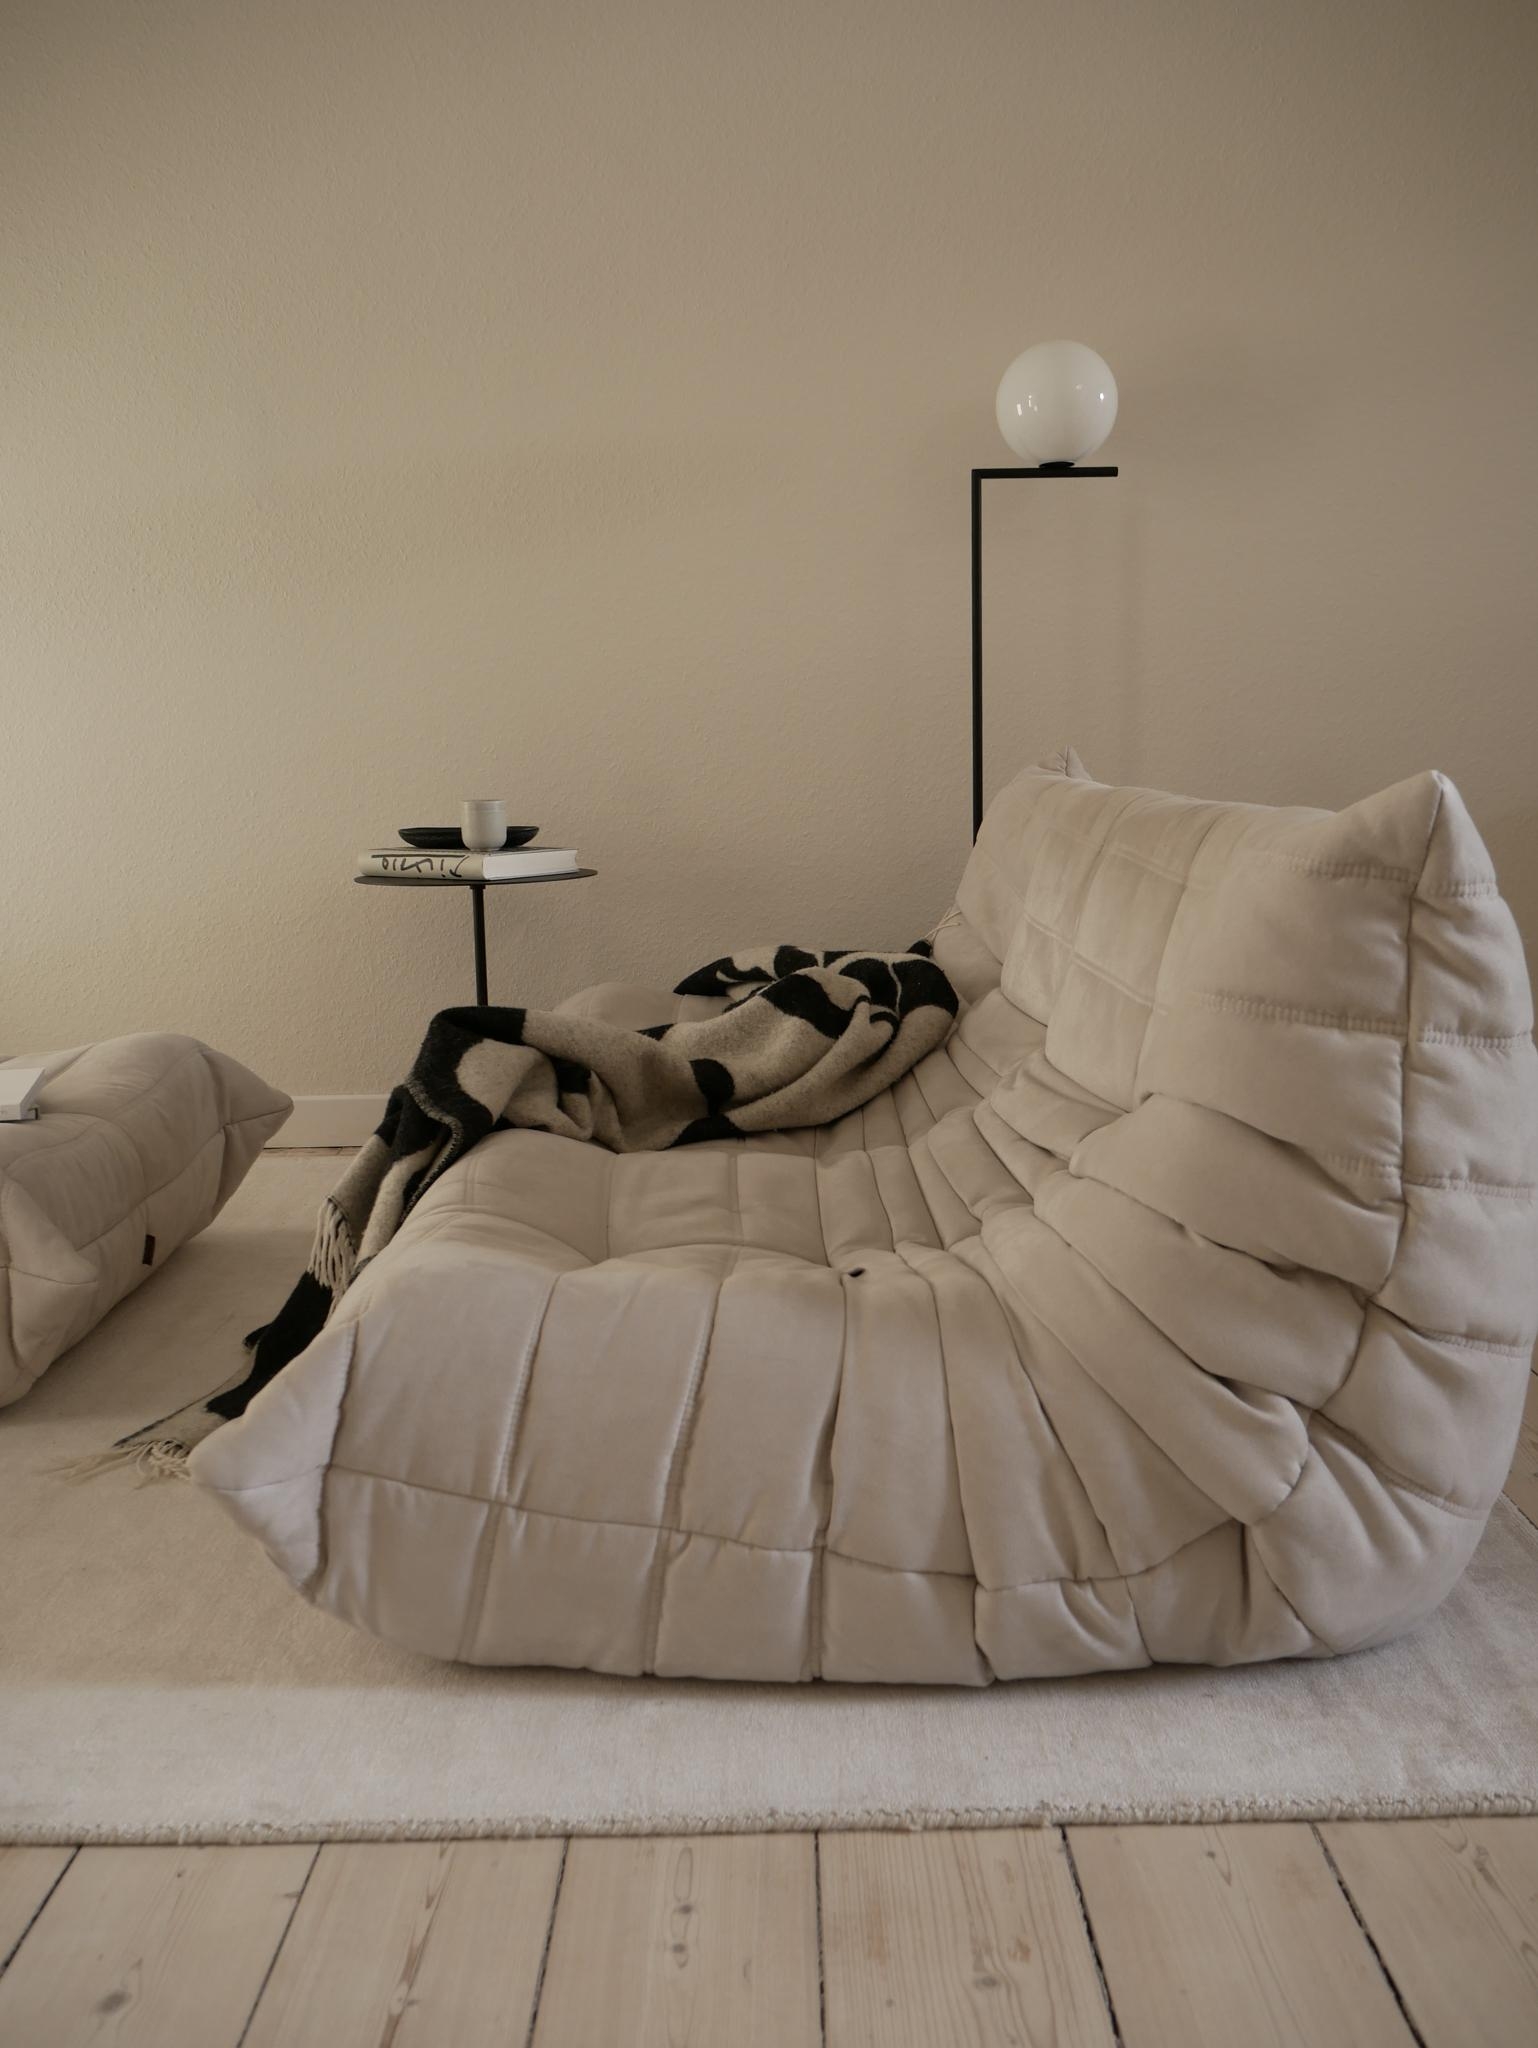 Füße hochlegen genau hier..  #couchstyle #altbau #interiordesign #homestyle #littlebreak #sofaliebe #togosofa